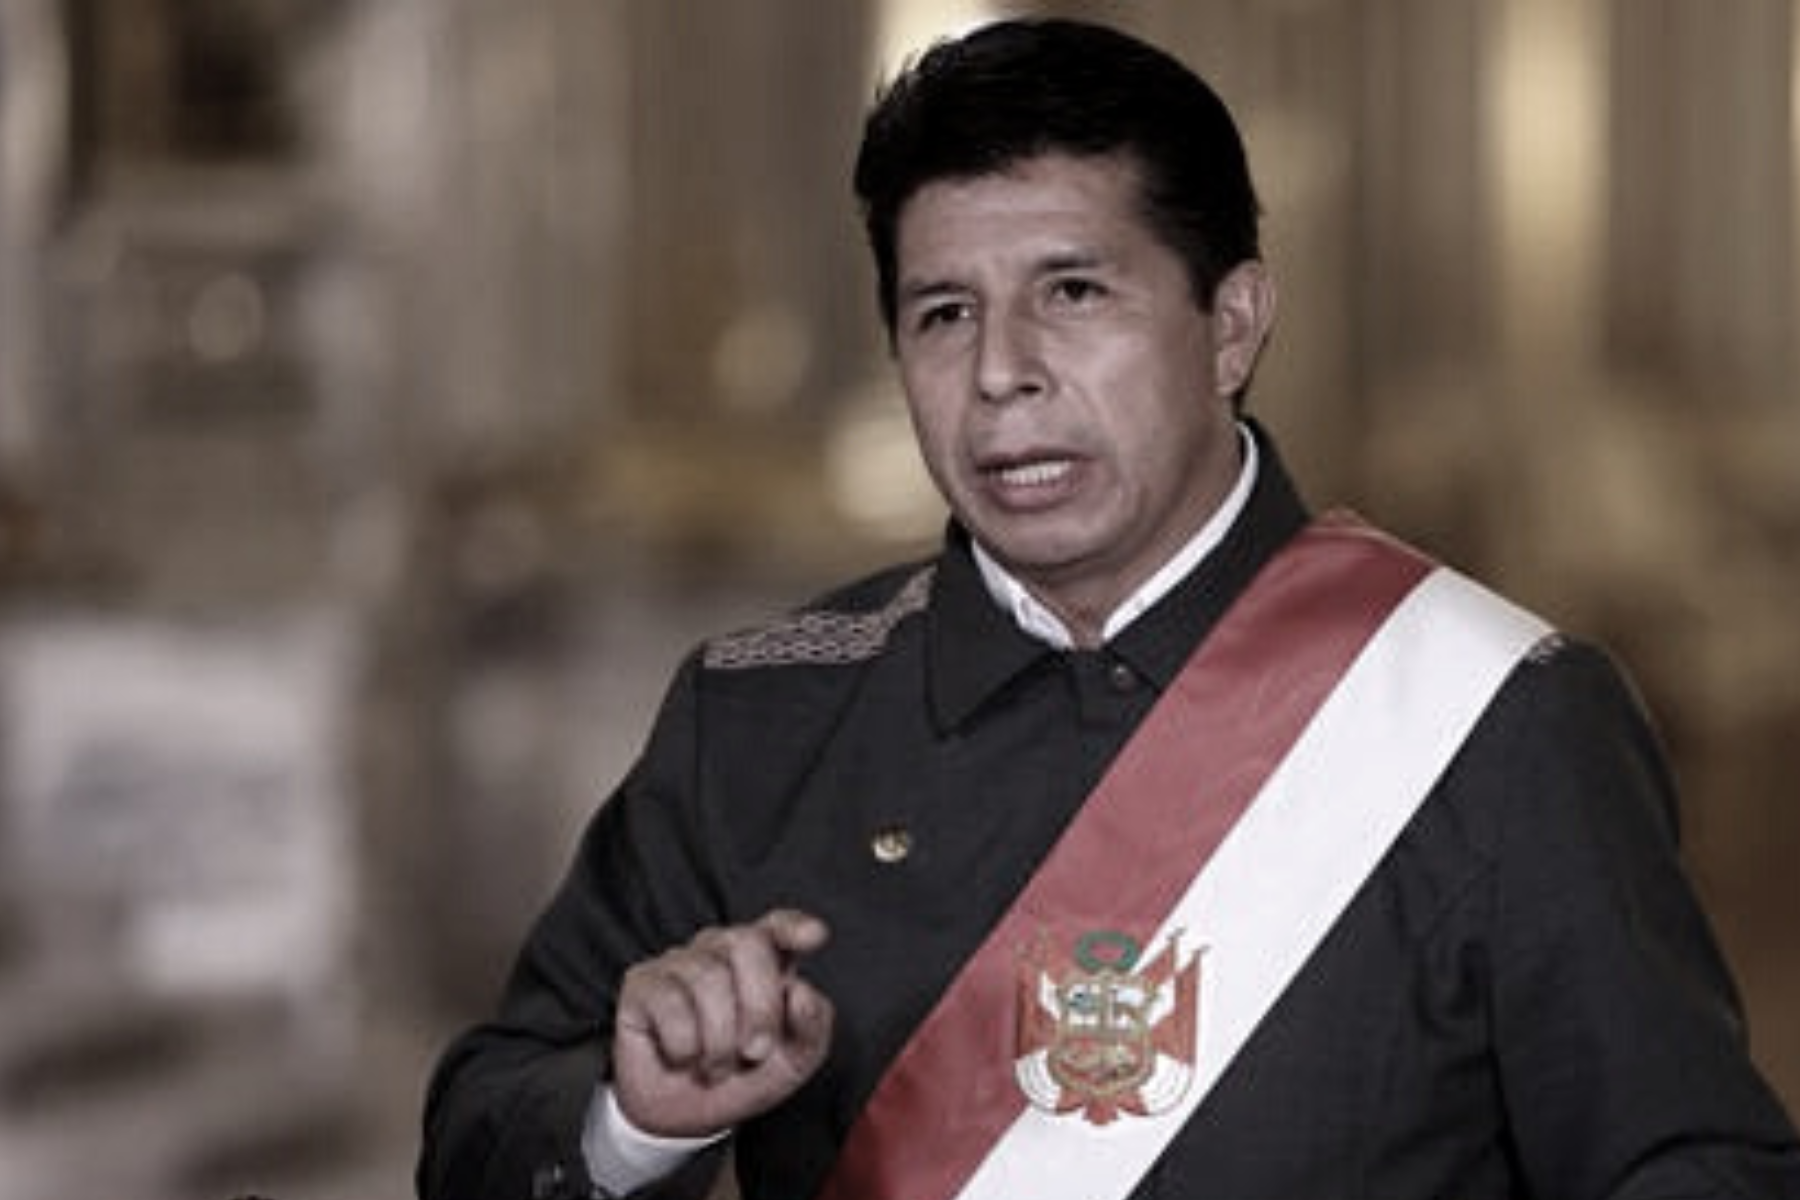 El presidente, Pedro Castillo, declaró que no se formó en la política y no recibió ningún entrenamiento para ese cargo en CNN.